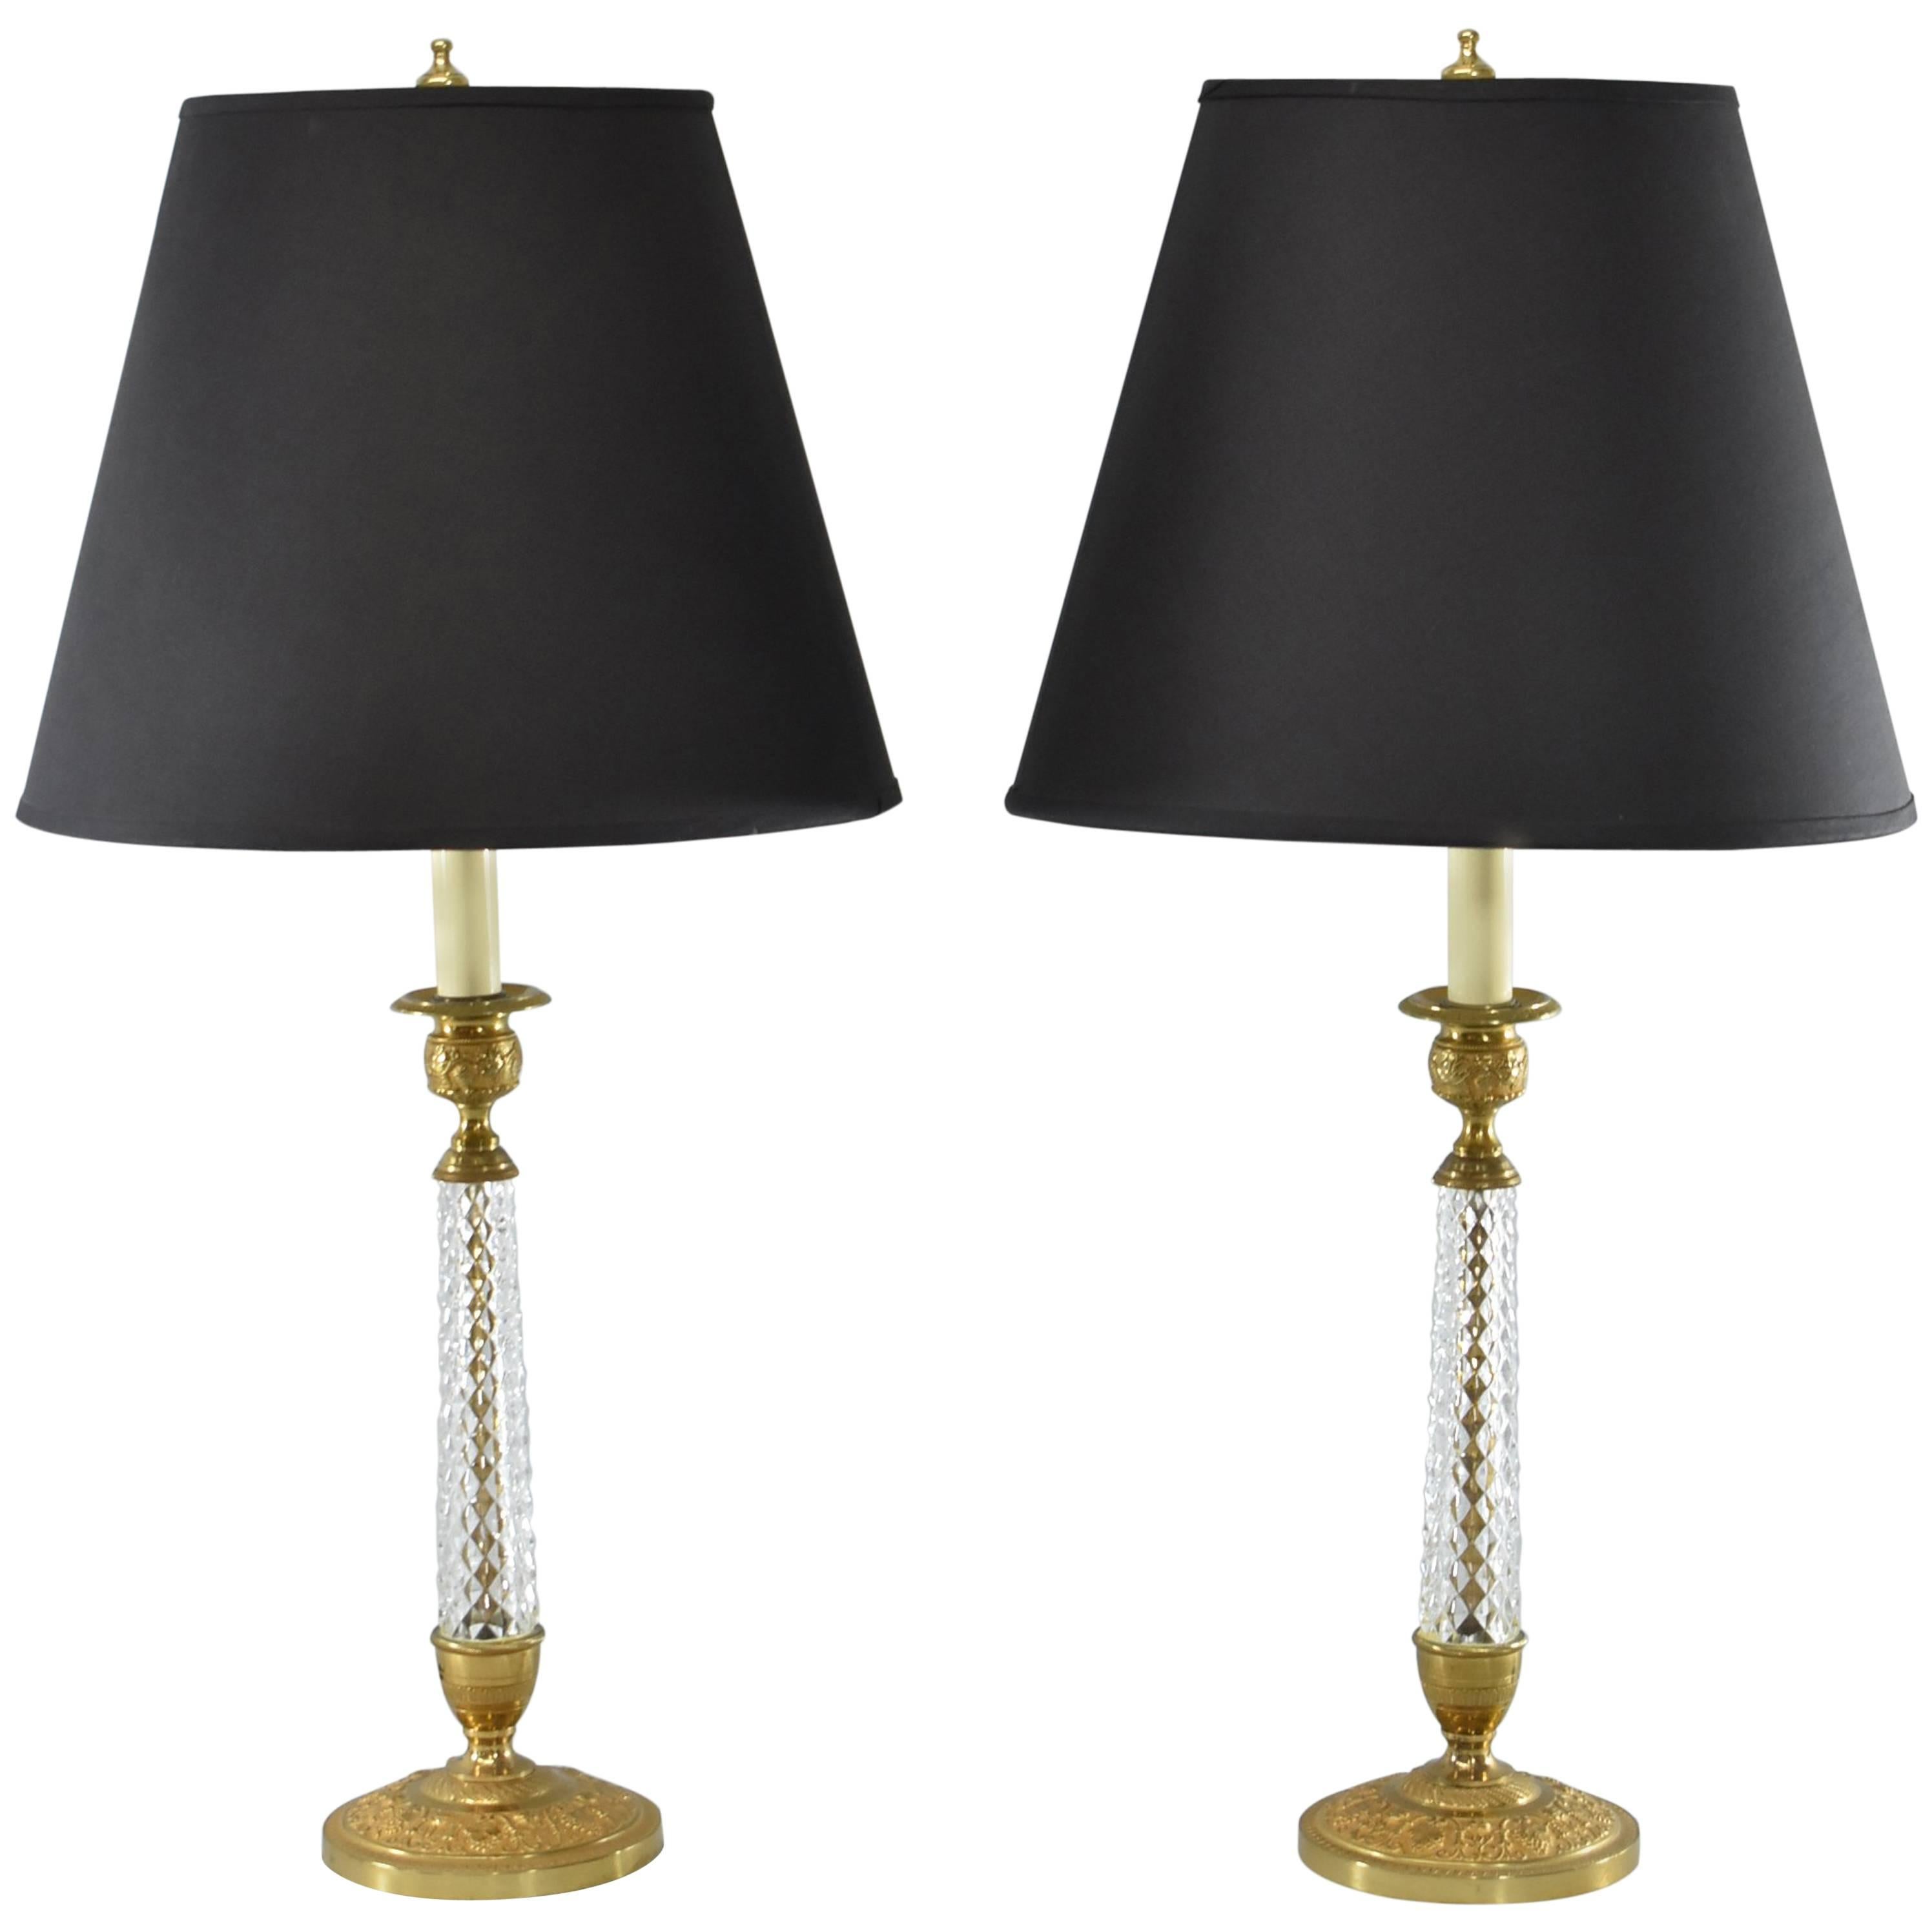 Pair of Cut-Glass and Embossed Metal Boudior Lamps